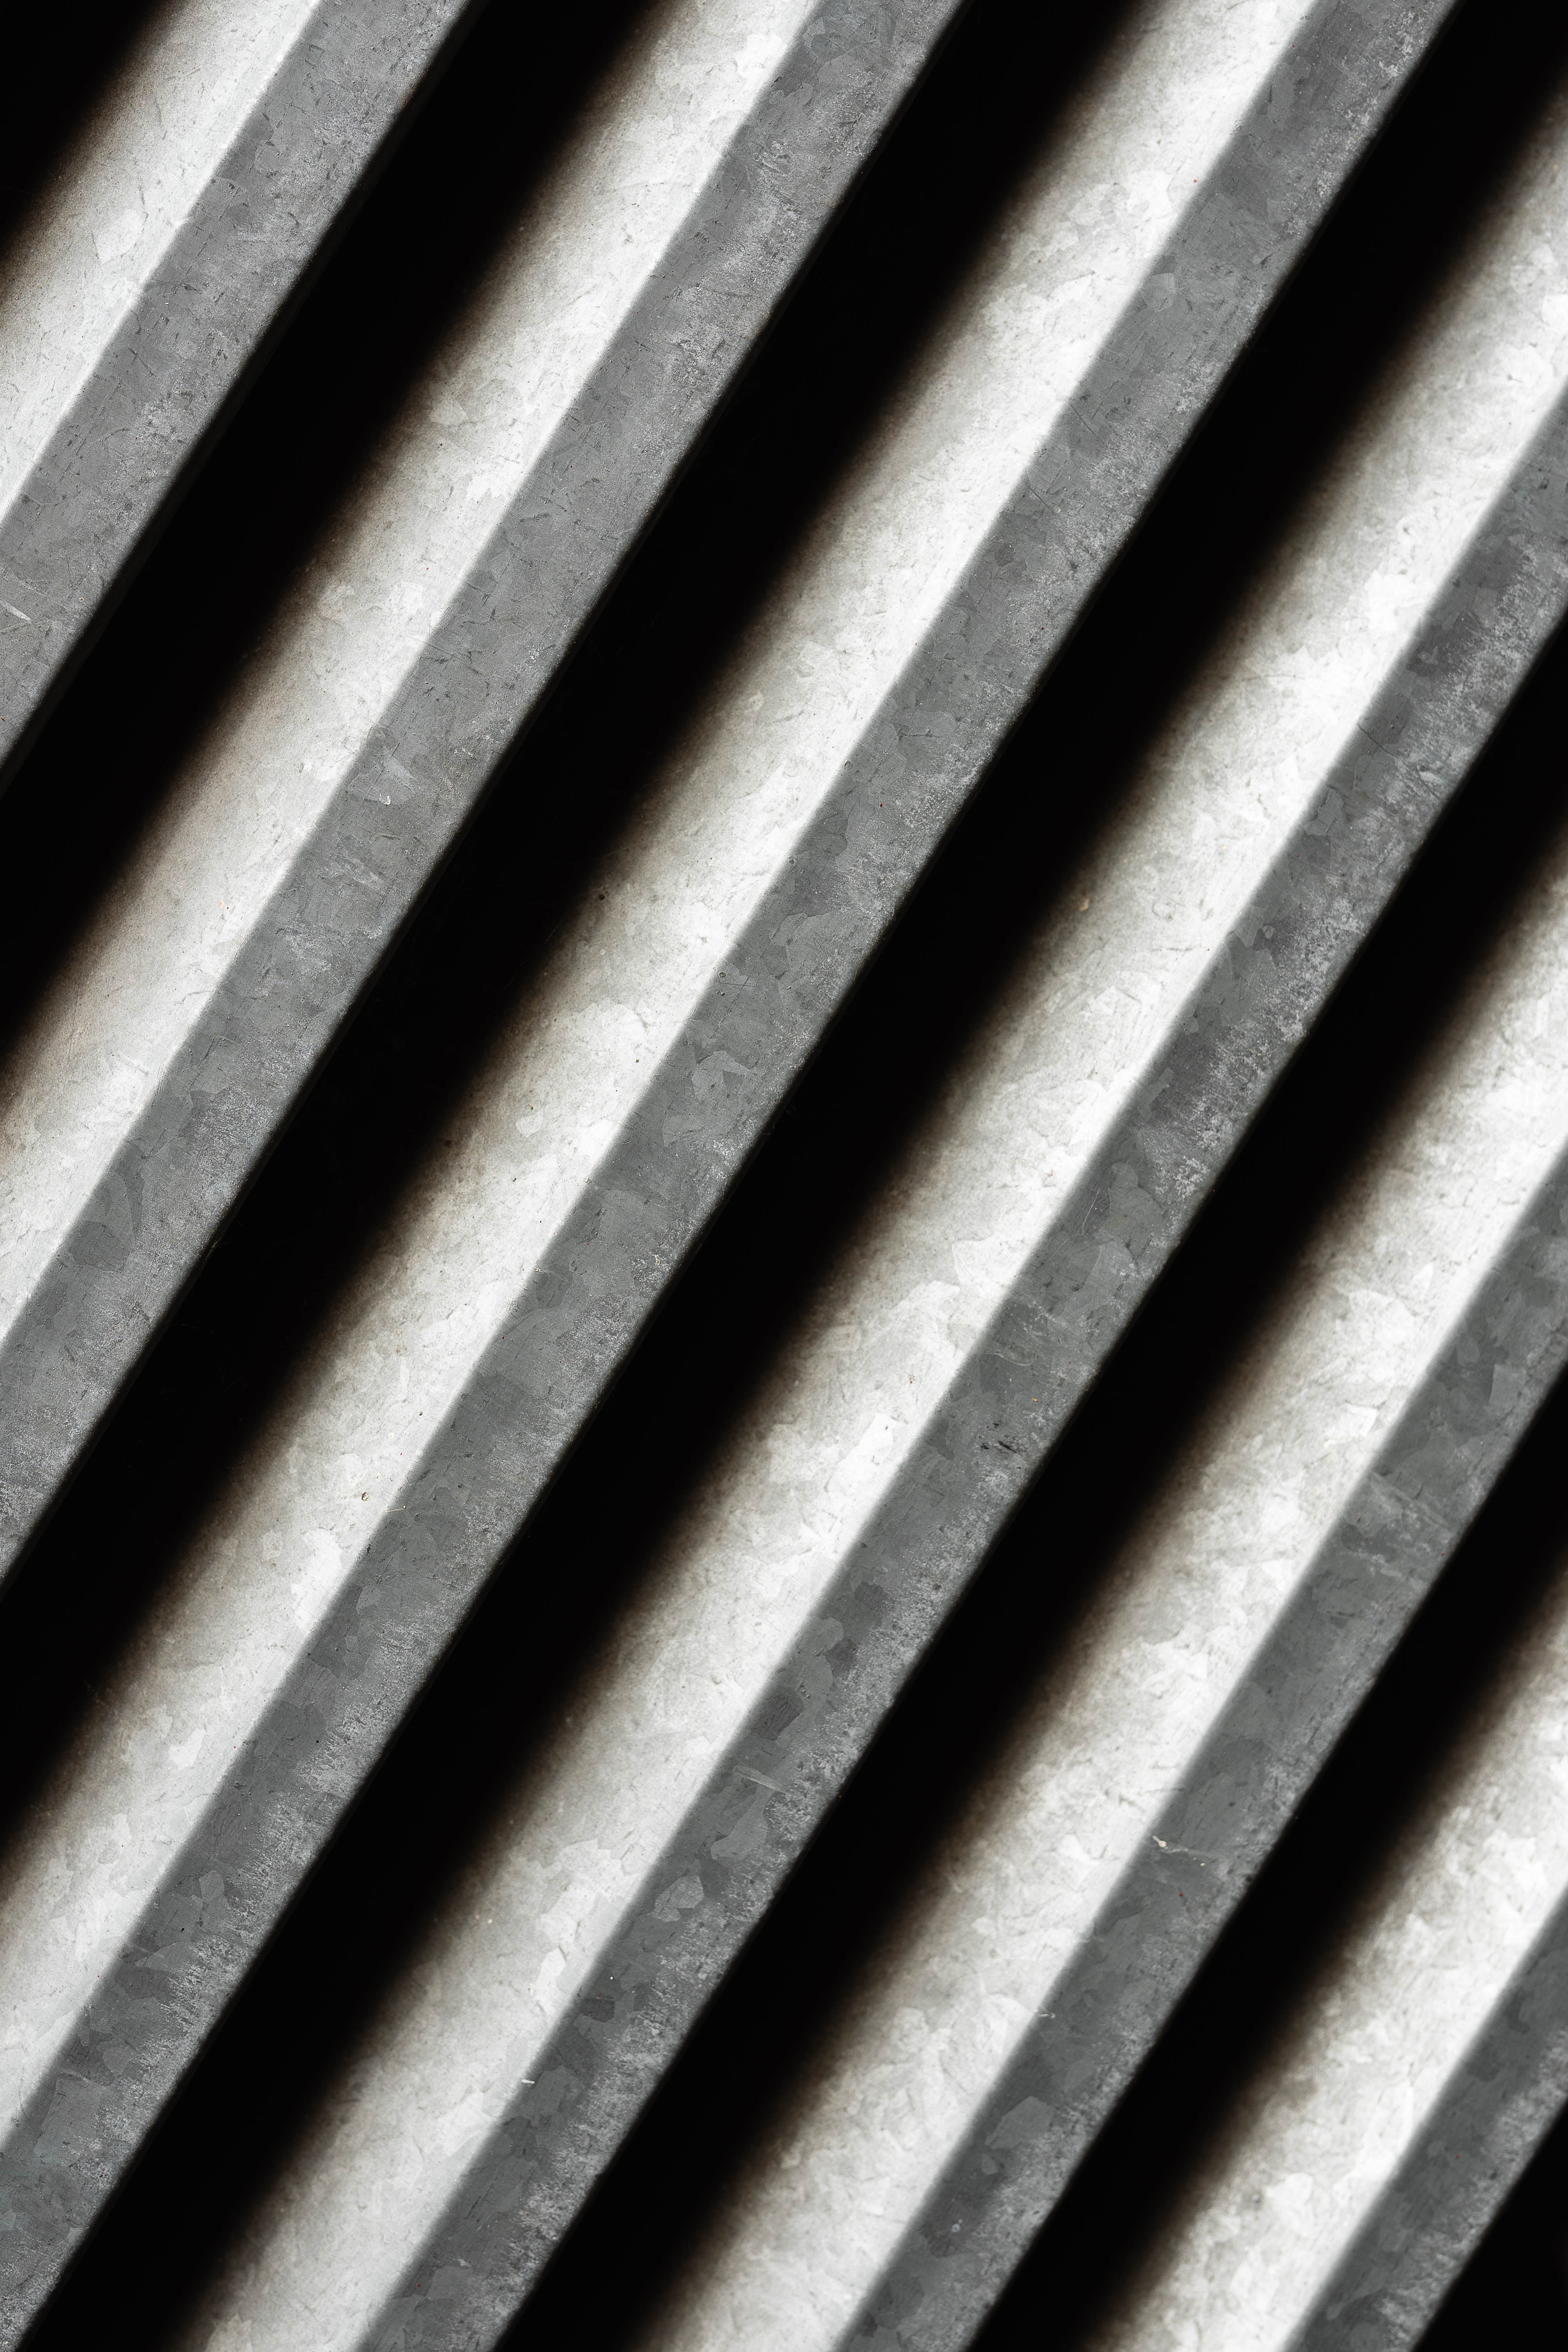 UHD wallpaper concrete, streaks, texture, obliquely